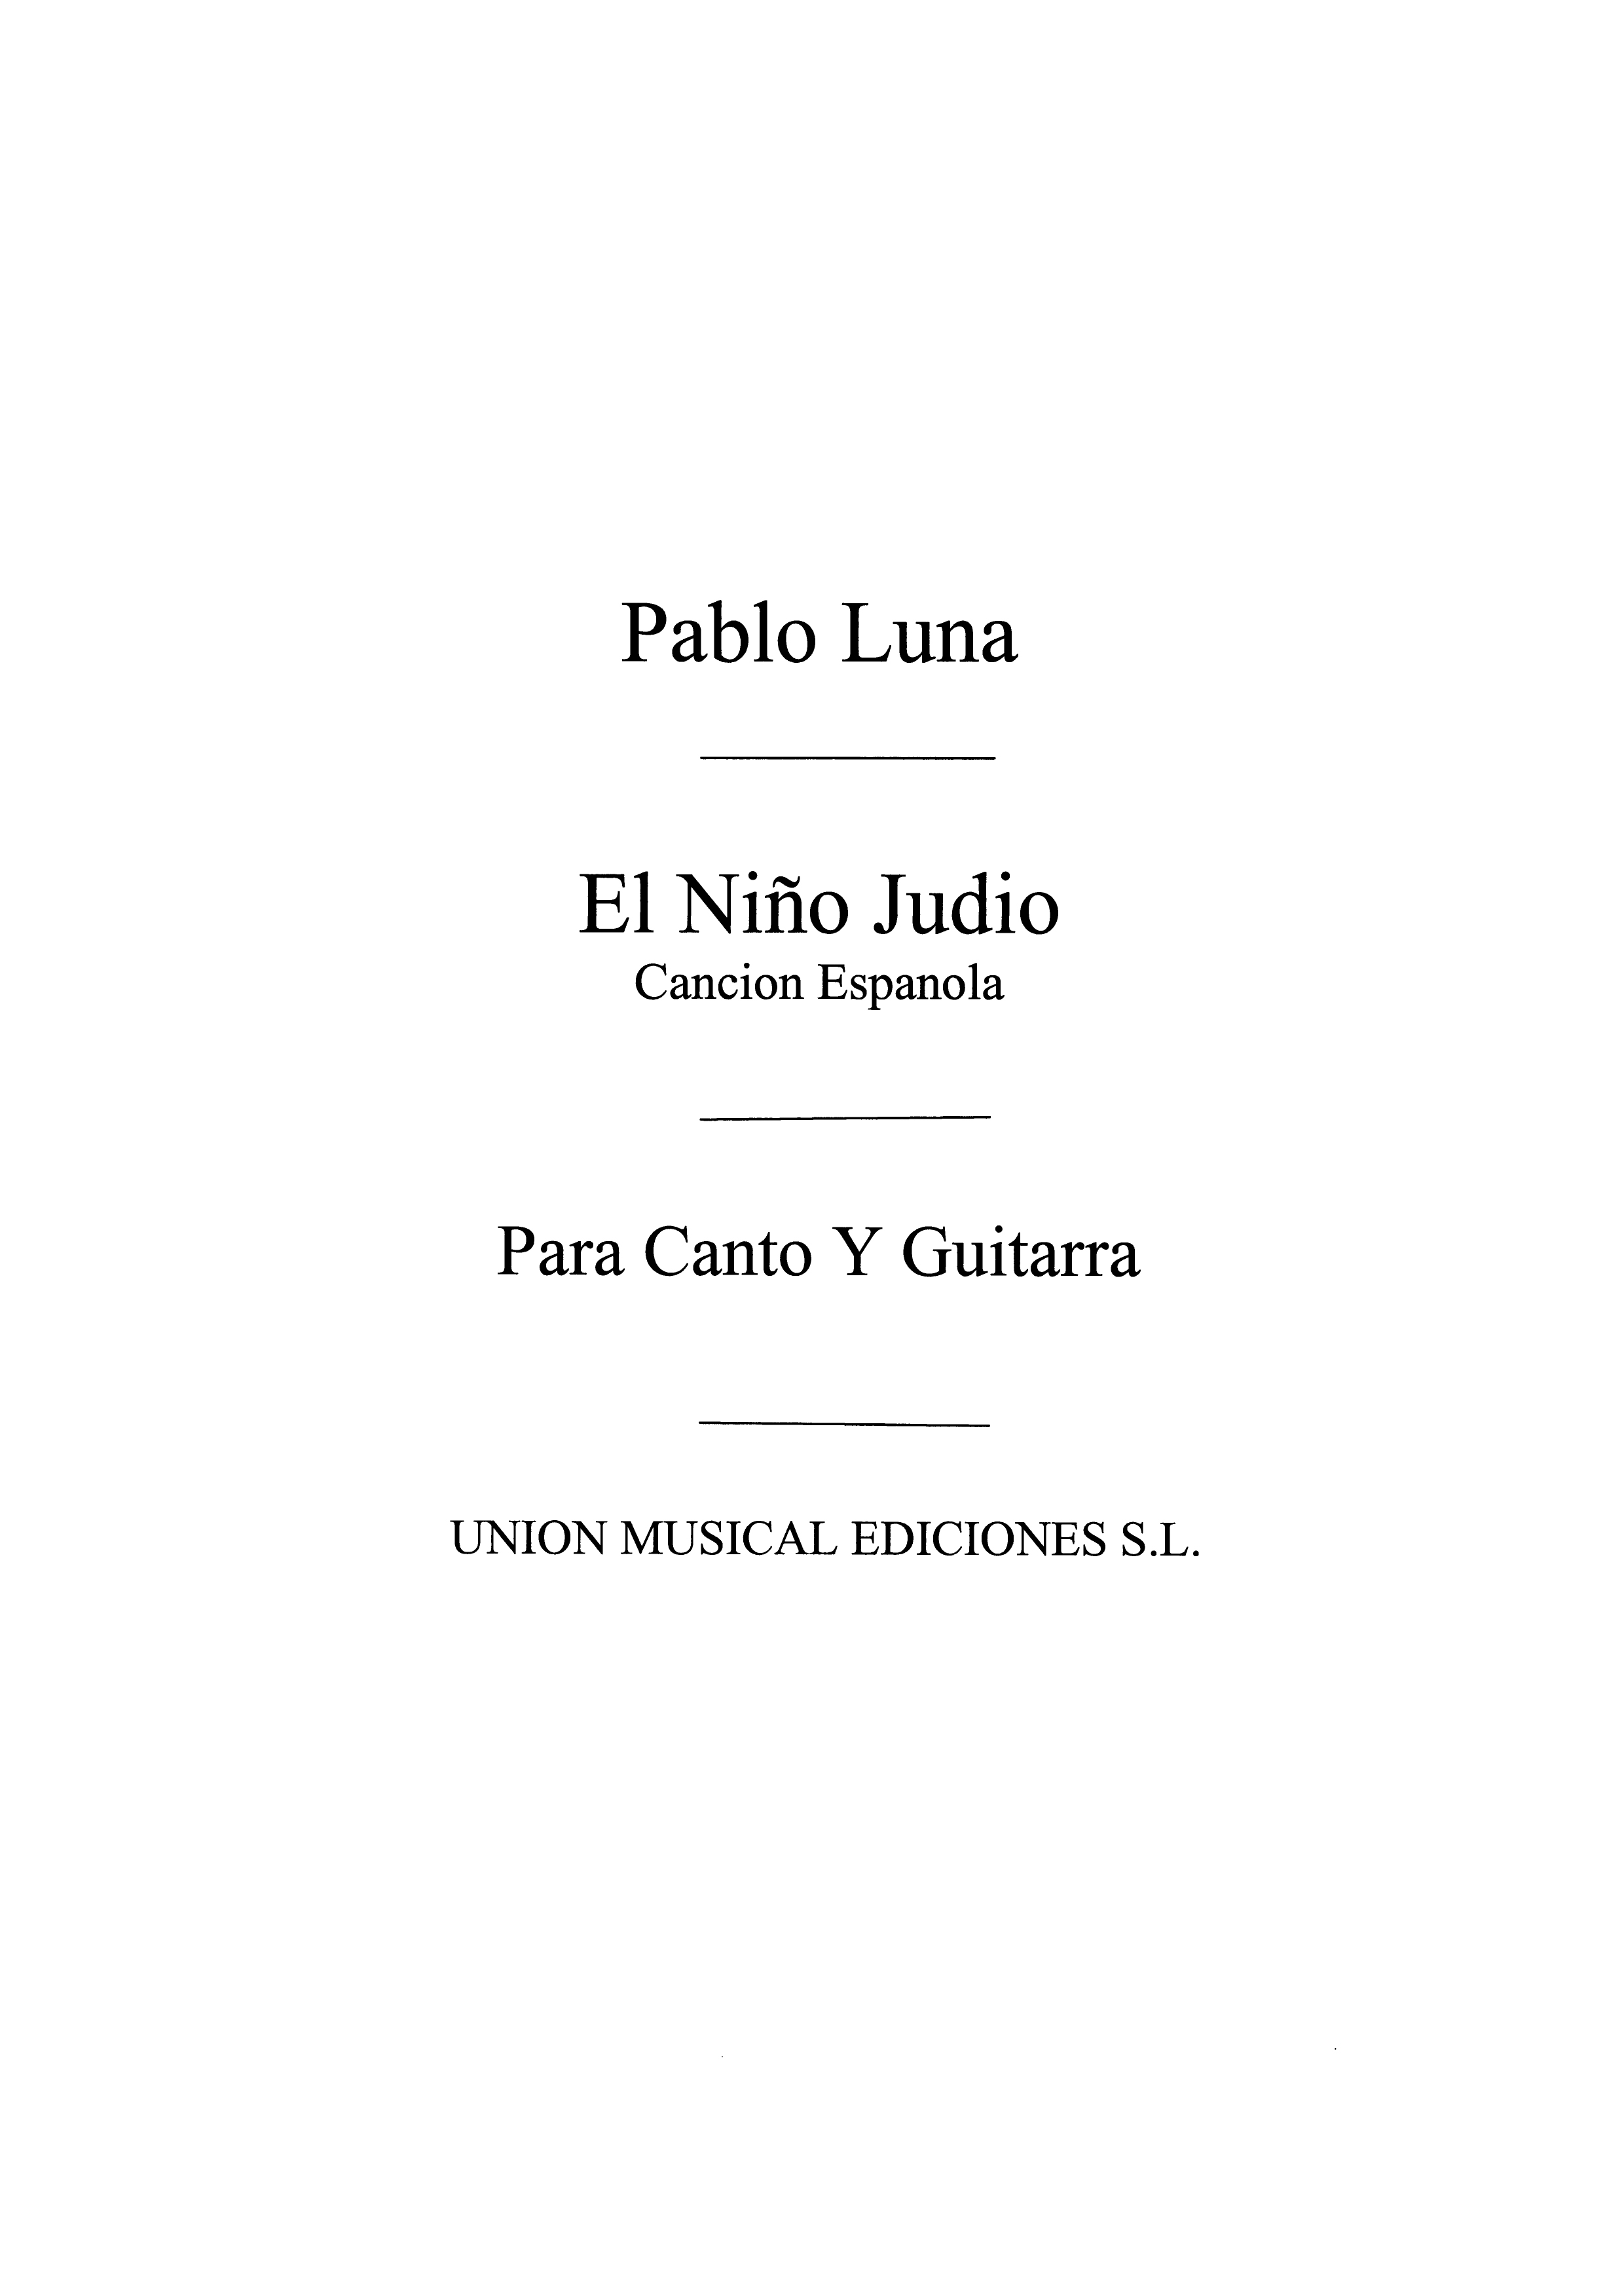 Pablo Luna: El Nino Judio Cancion Espanola: Opera: Instrumental Work